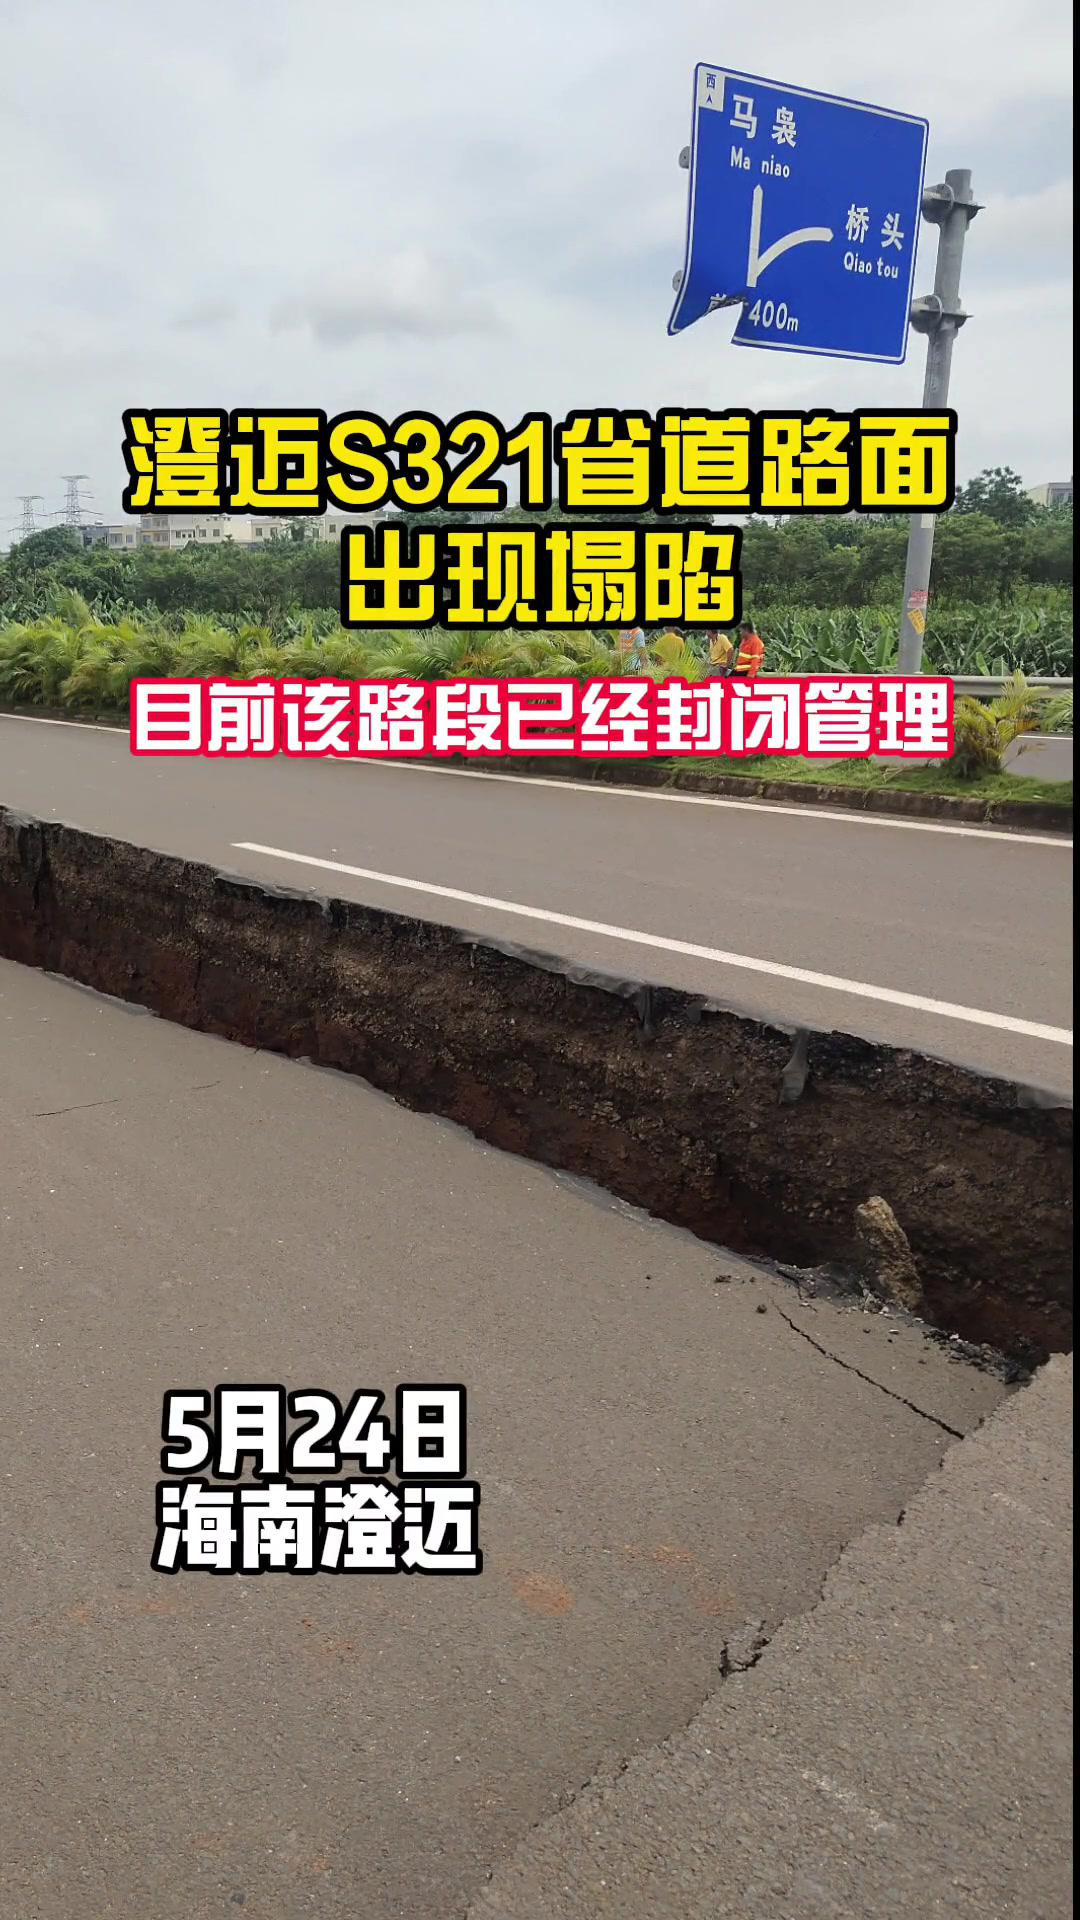 海南澄迈s321省道路面出现塌陷,目前该路段已经封闭管理,目测约有300